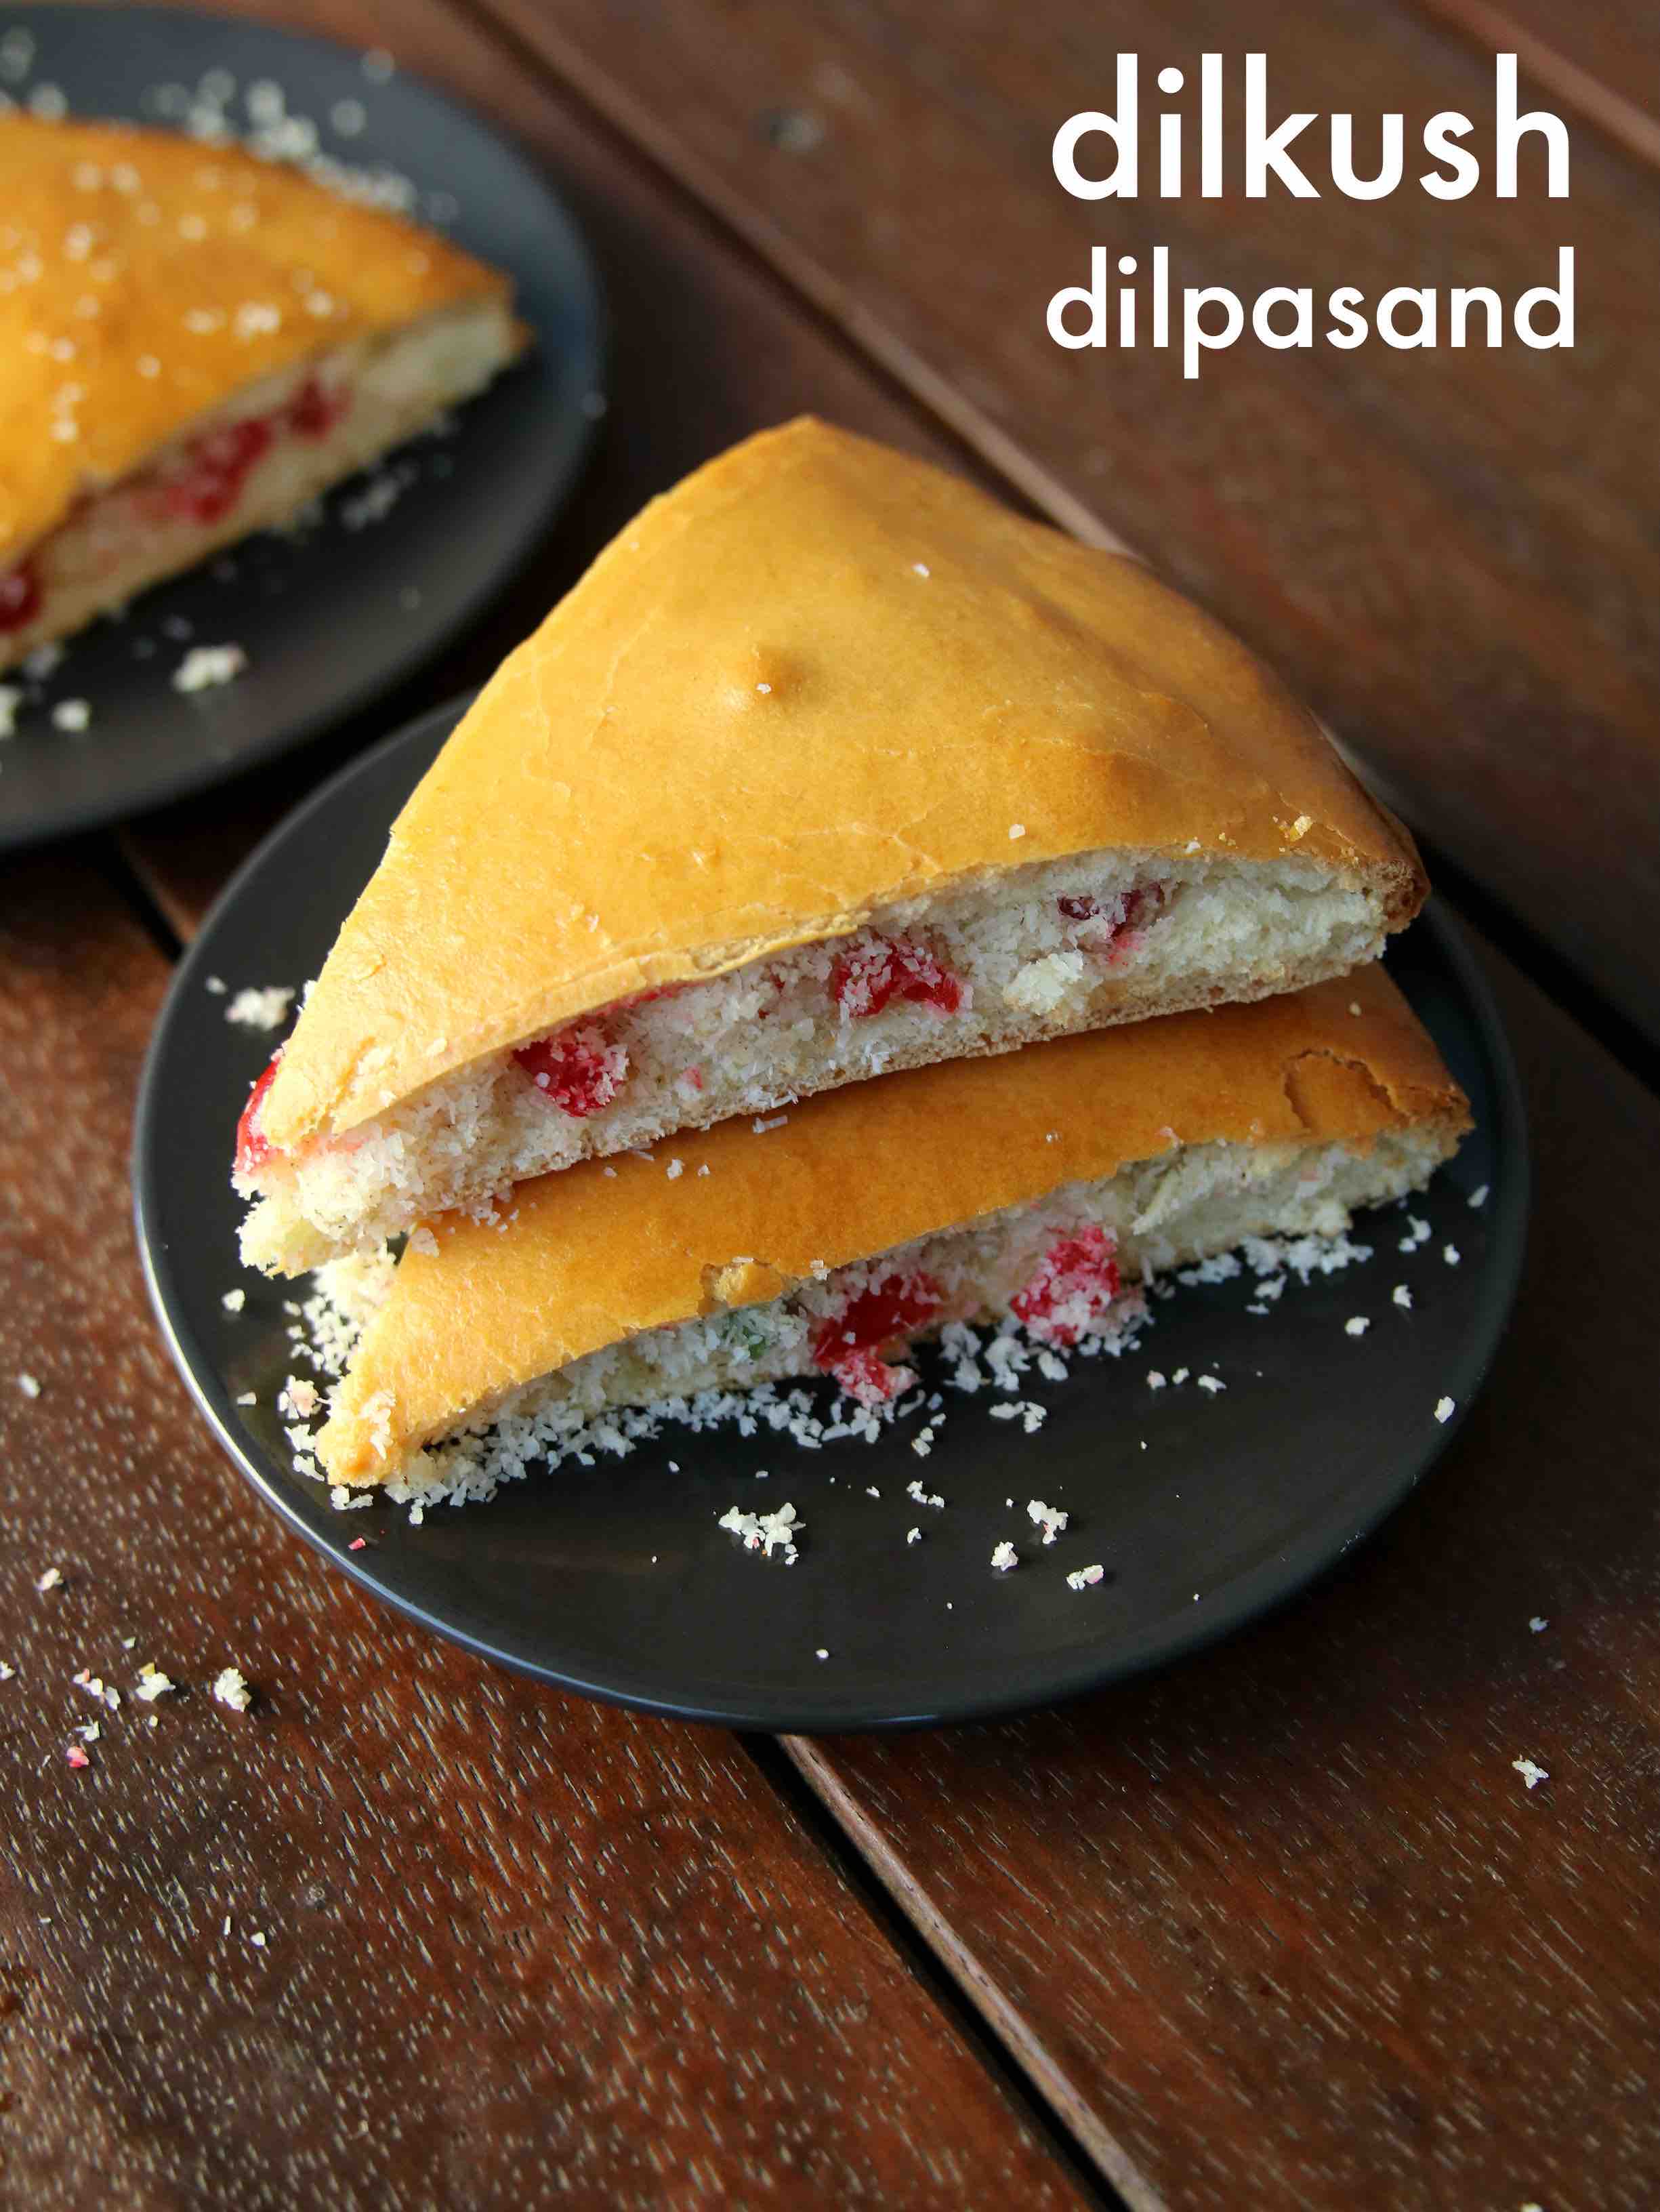 Bakery style Dilpasand without oven - Nishamadhulika.com